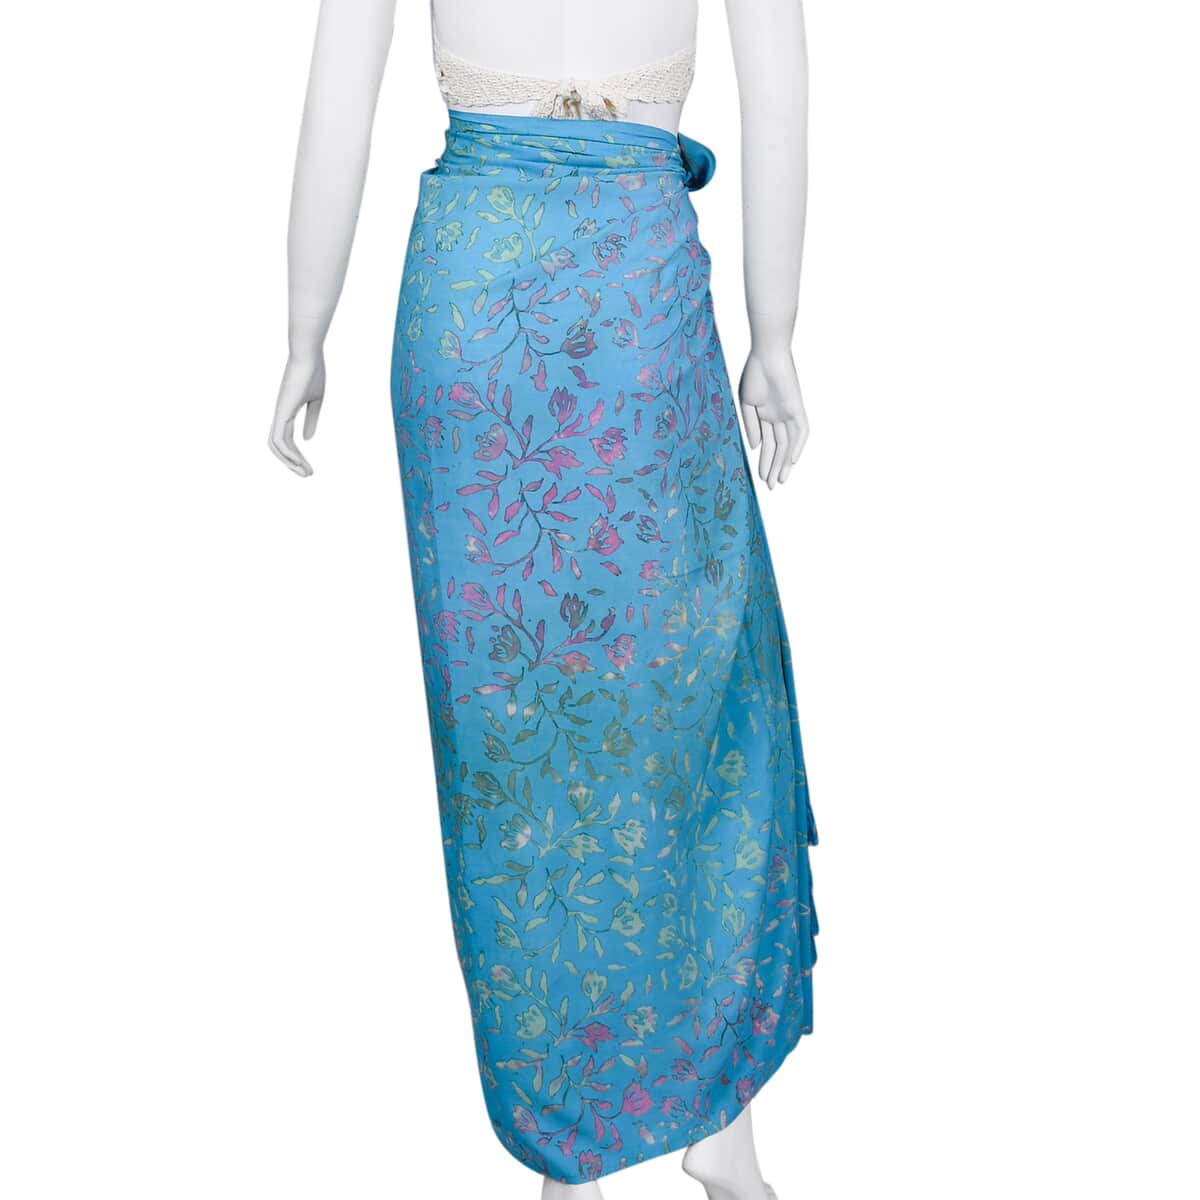 Handmade Turquoise Floral Motif Pattern 100% Rayon Sarong | Women's Saron Wrap | Sarong Skirt | Beach Sarong Cover Up image number 2